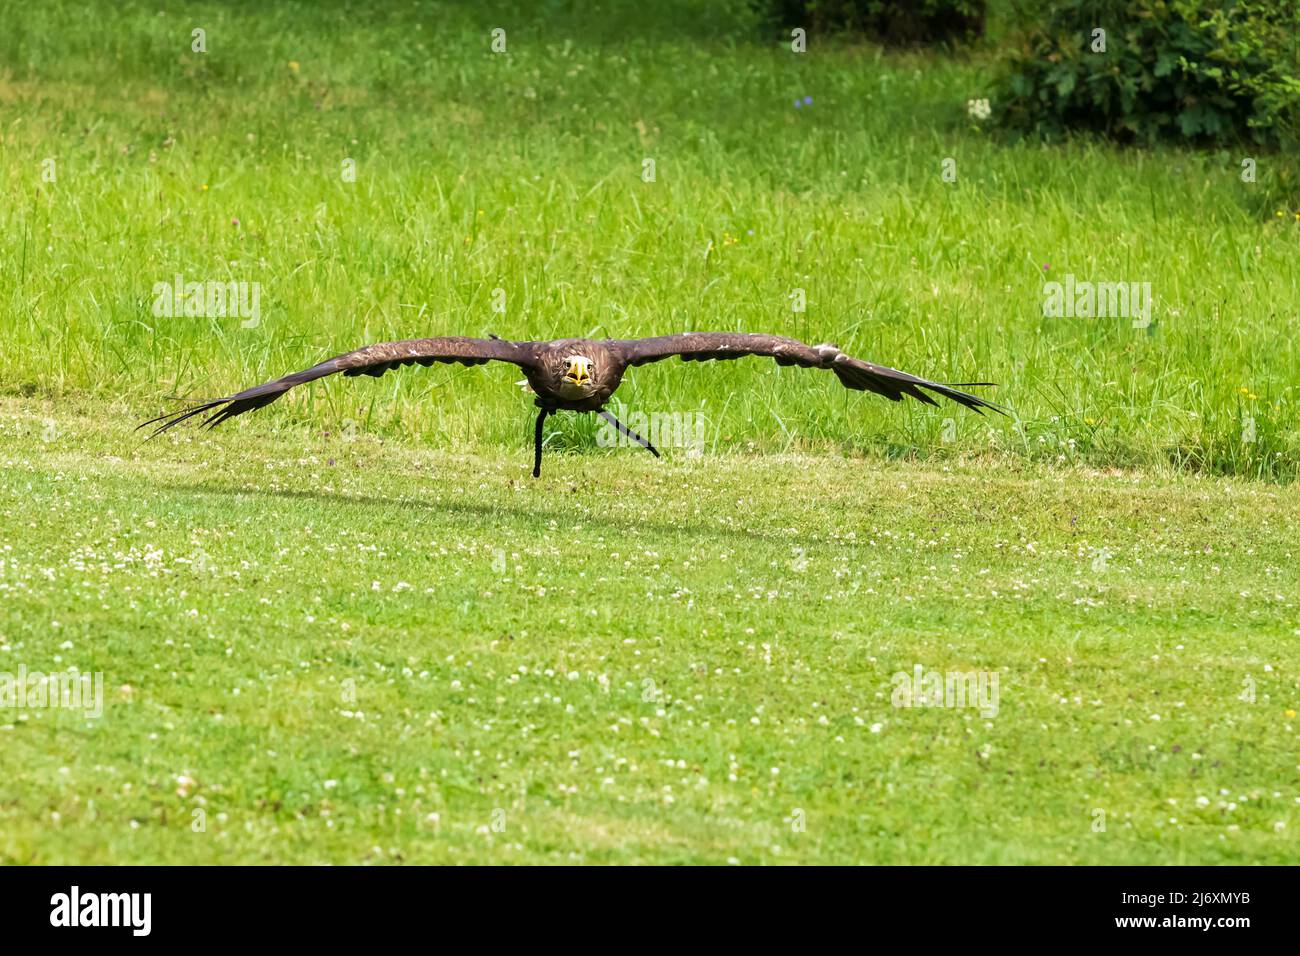 Ein Falke-gelender Greifadler fliegt über eine grüne Wiese. Stockfoto